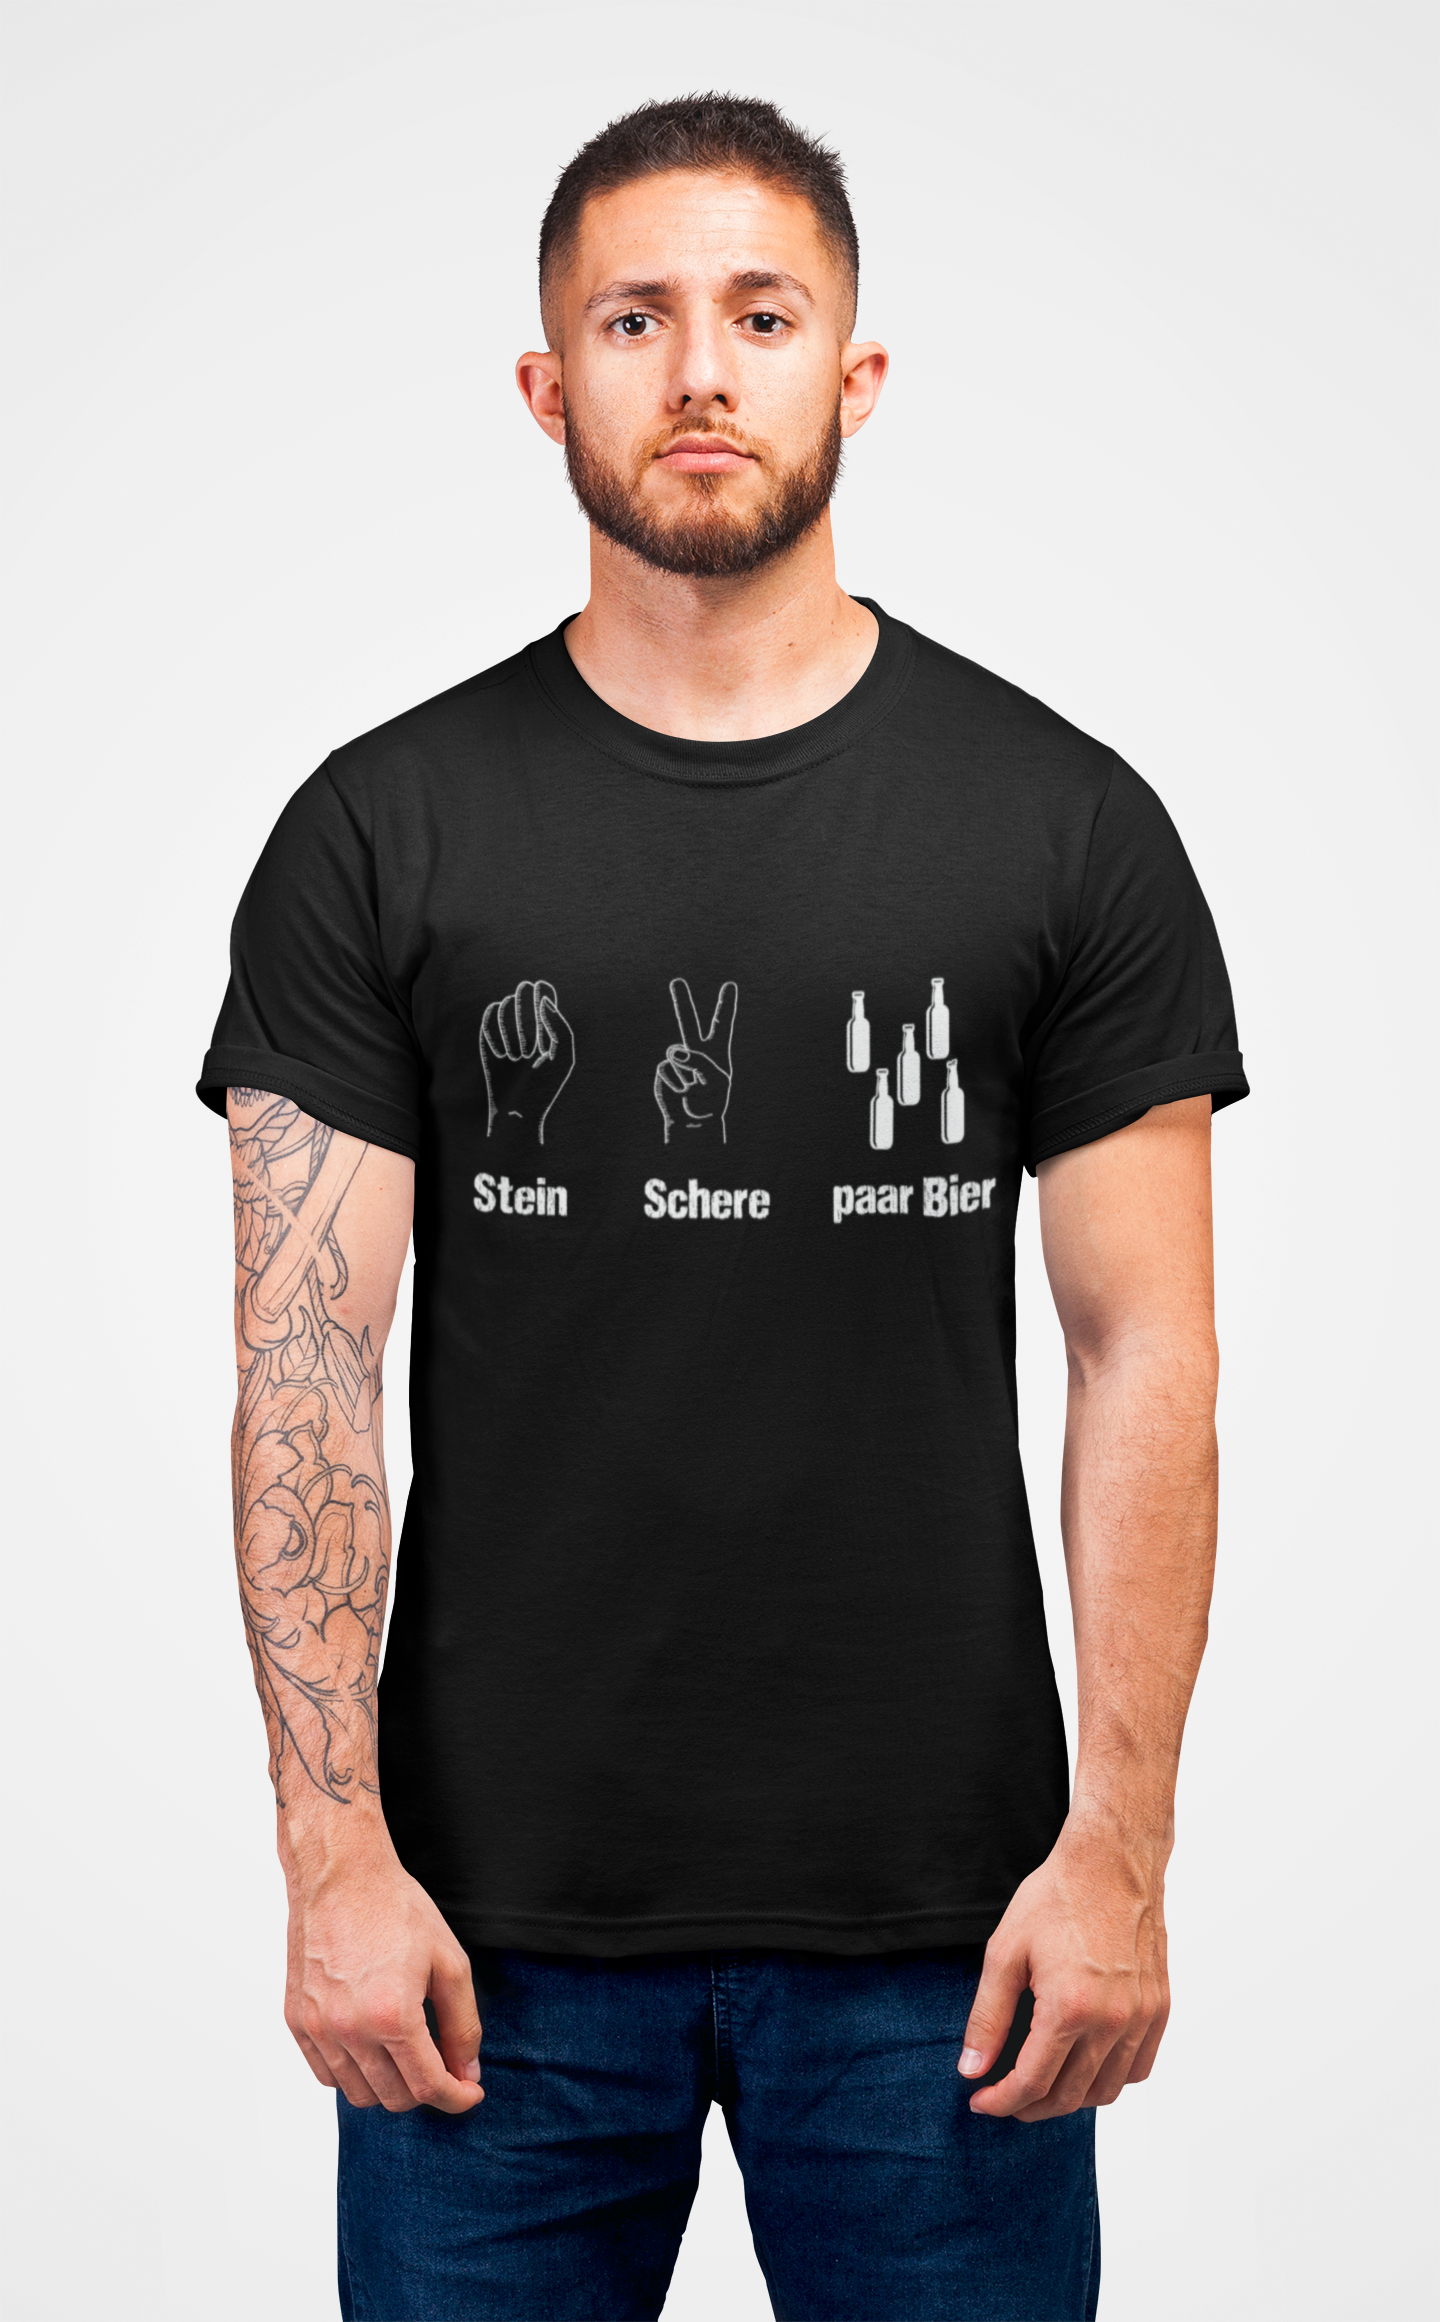 "Stein Schere paar Bier" T-Shirt